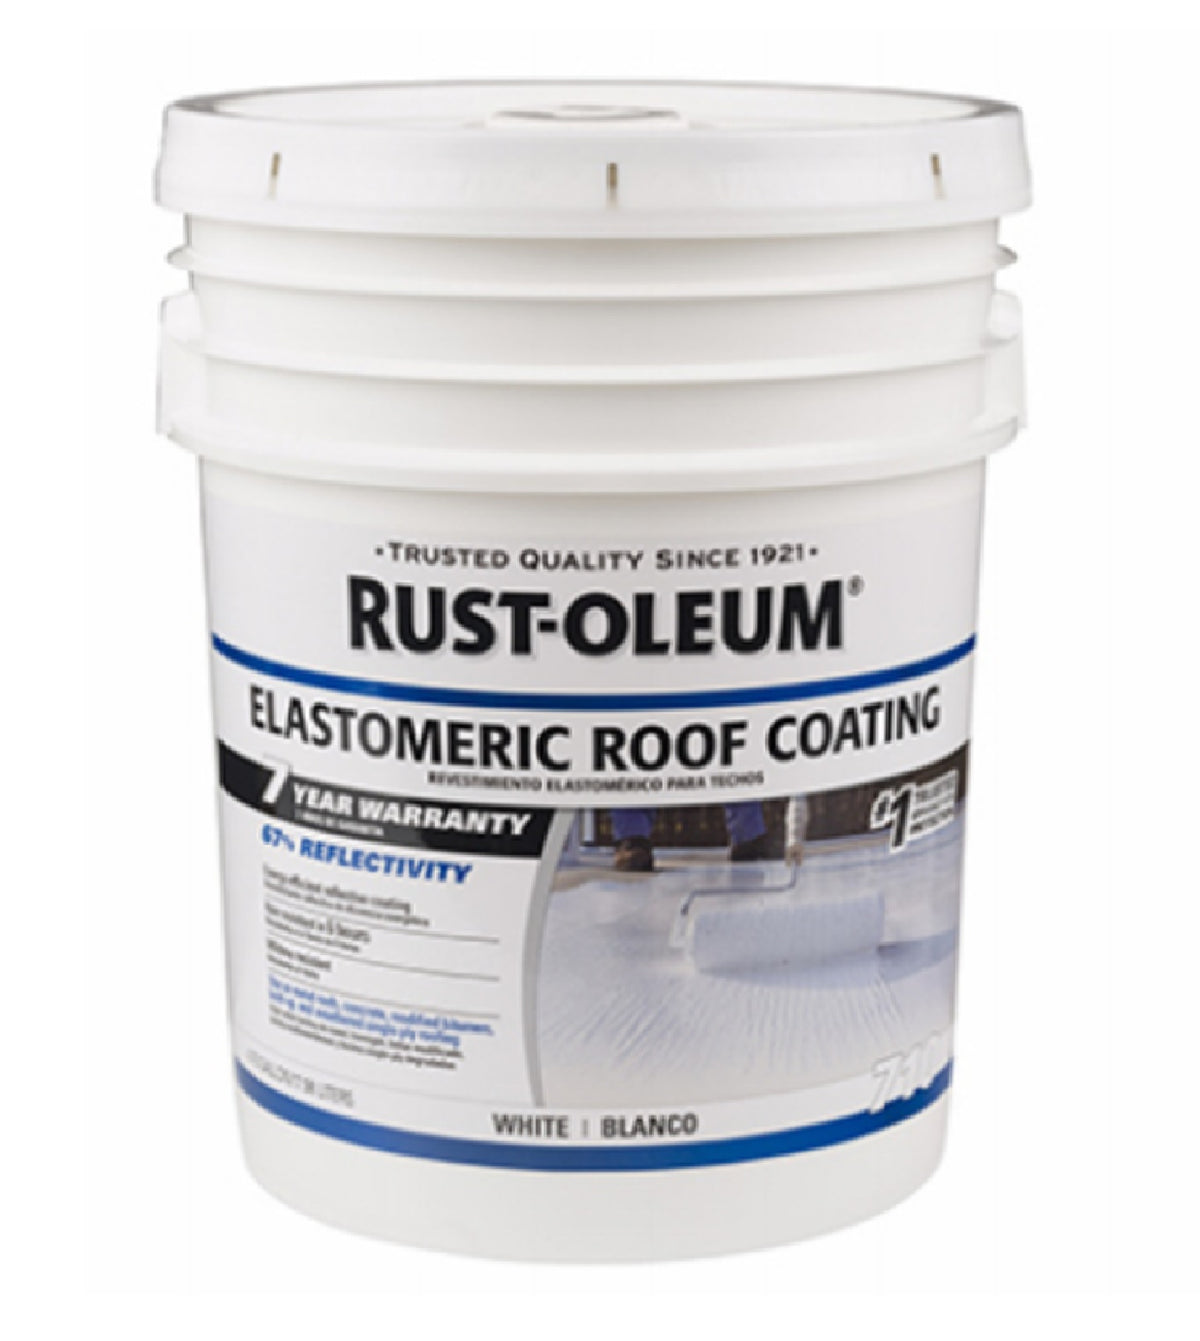 Rust-Oleum 301994 Elastomeric Roof Coating, White, 5 Gallon